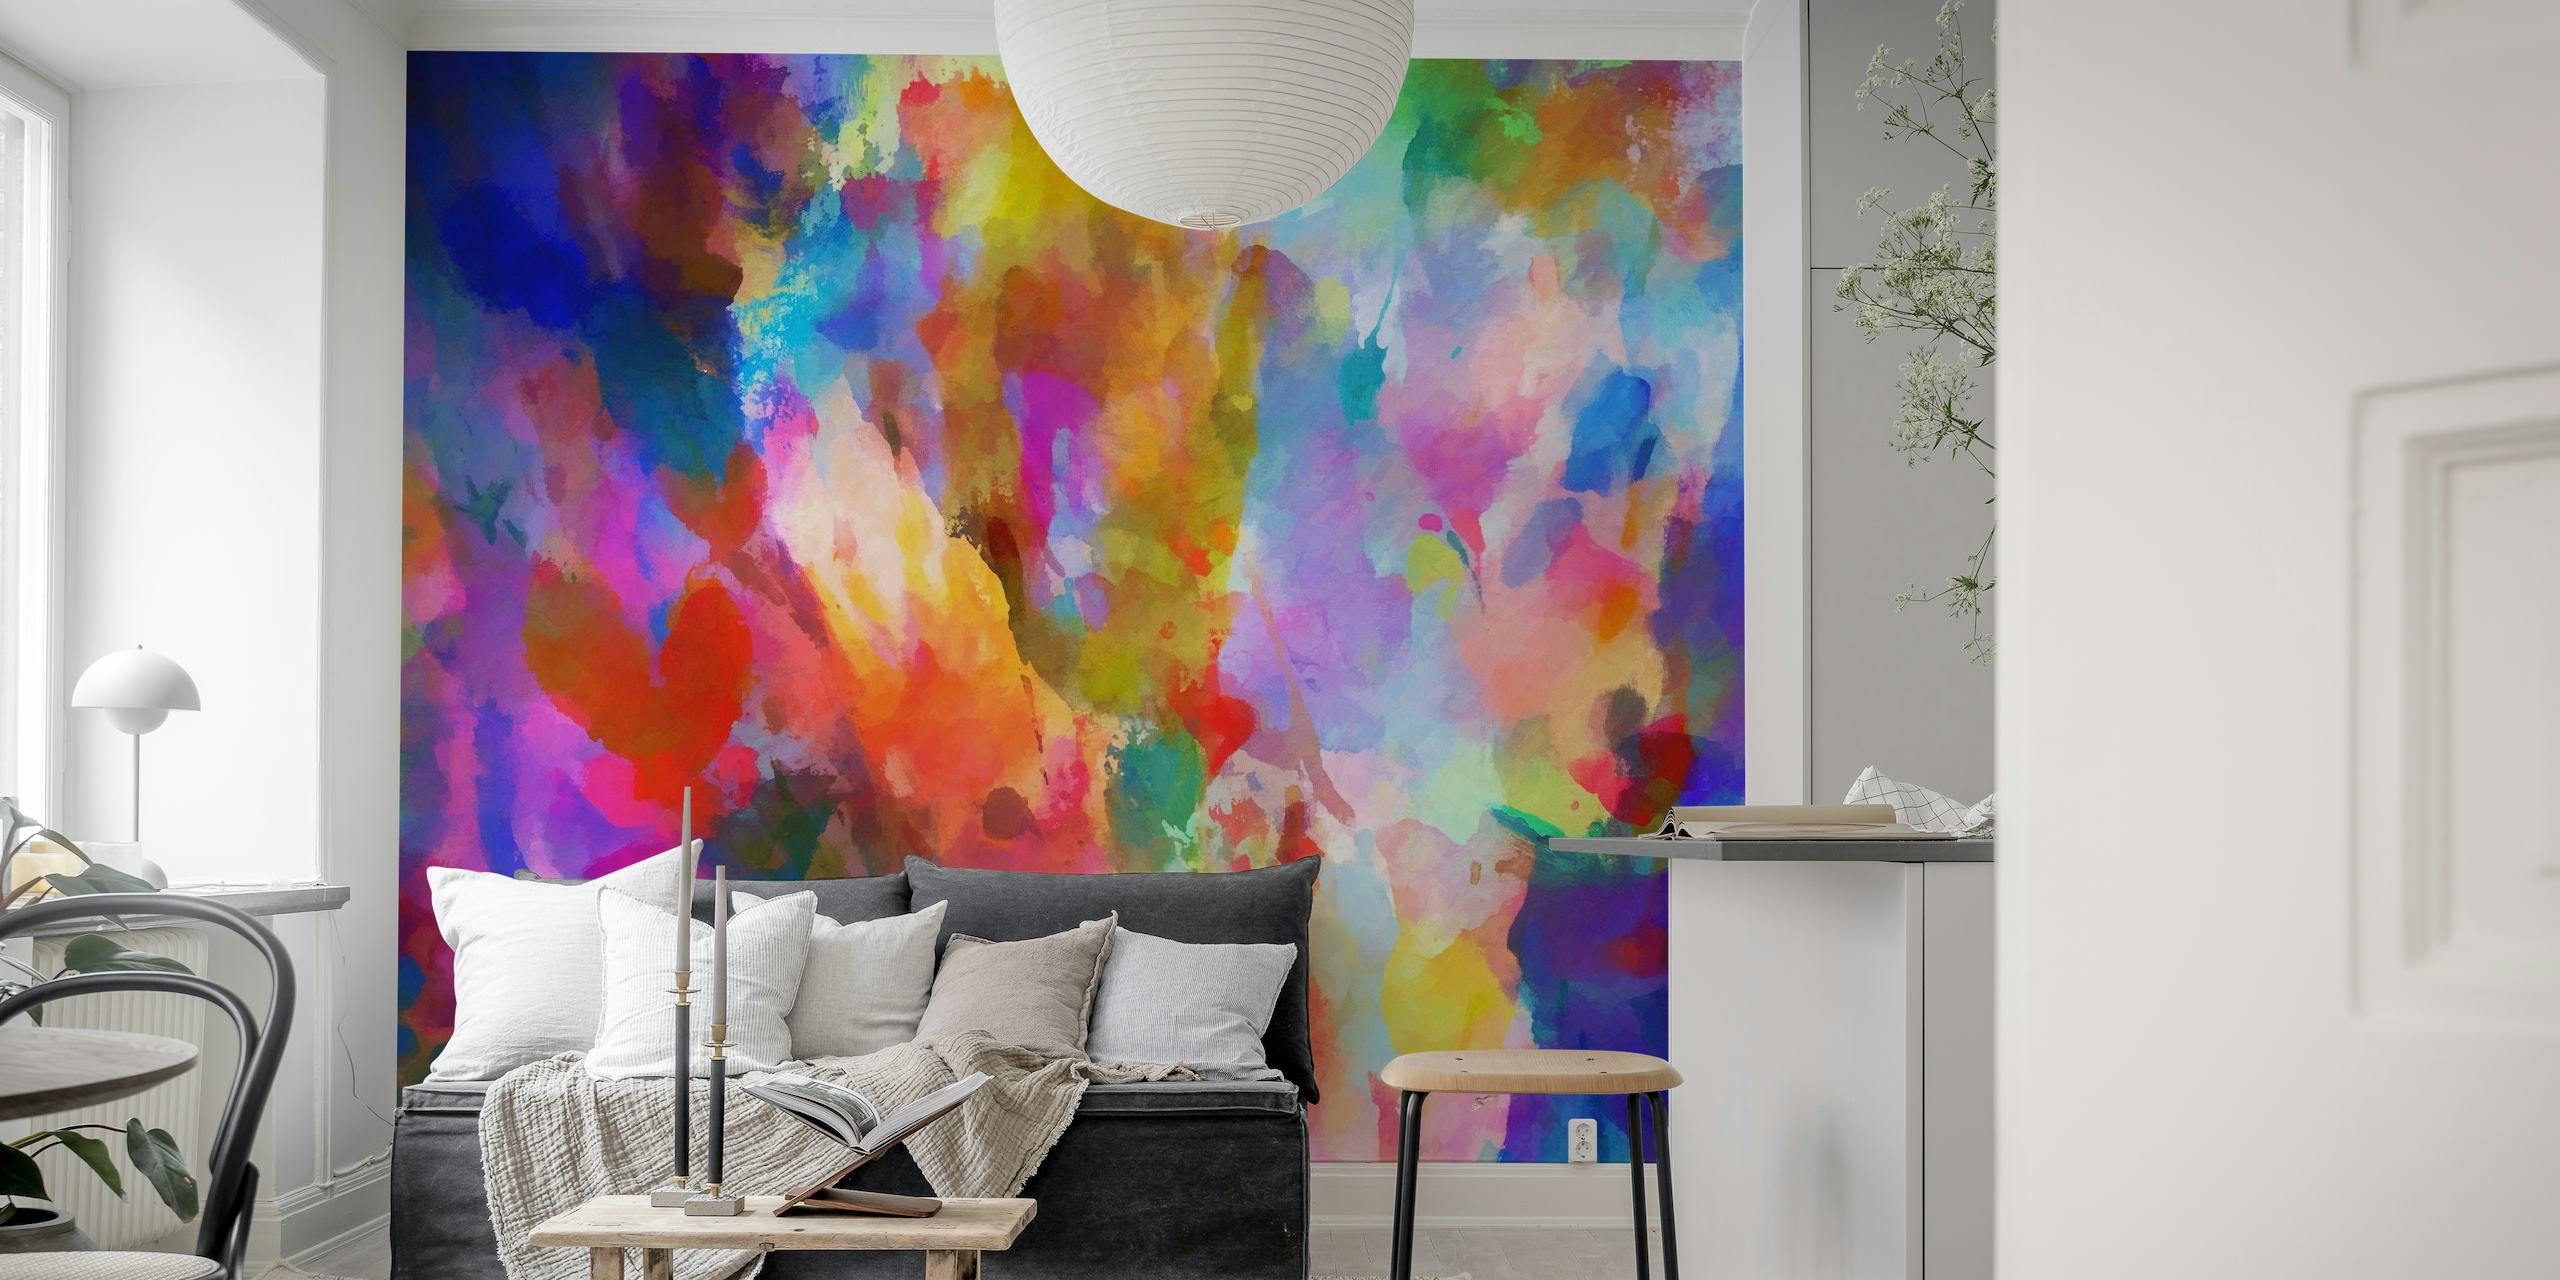 Papier peint d'art abstrait coloré avec un spectre vif de teintes mélangées